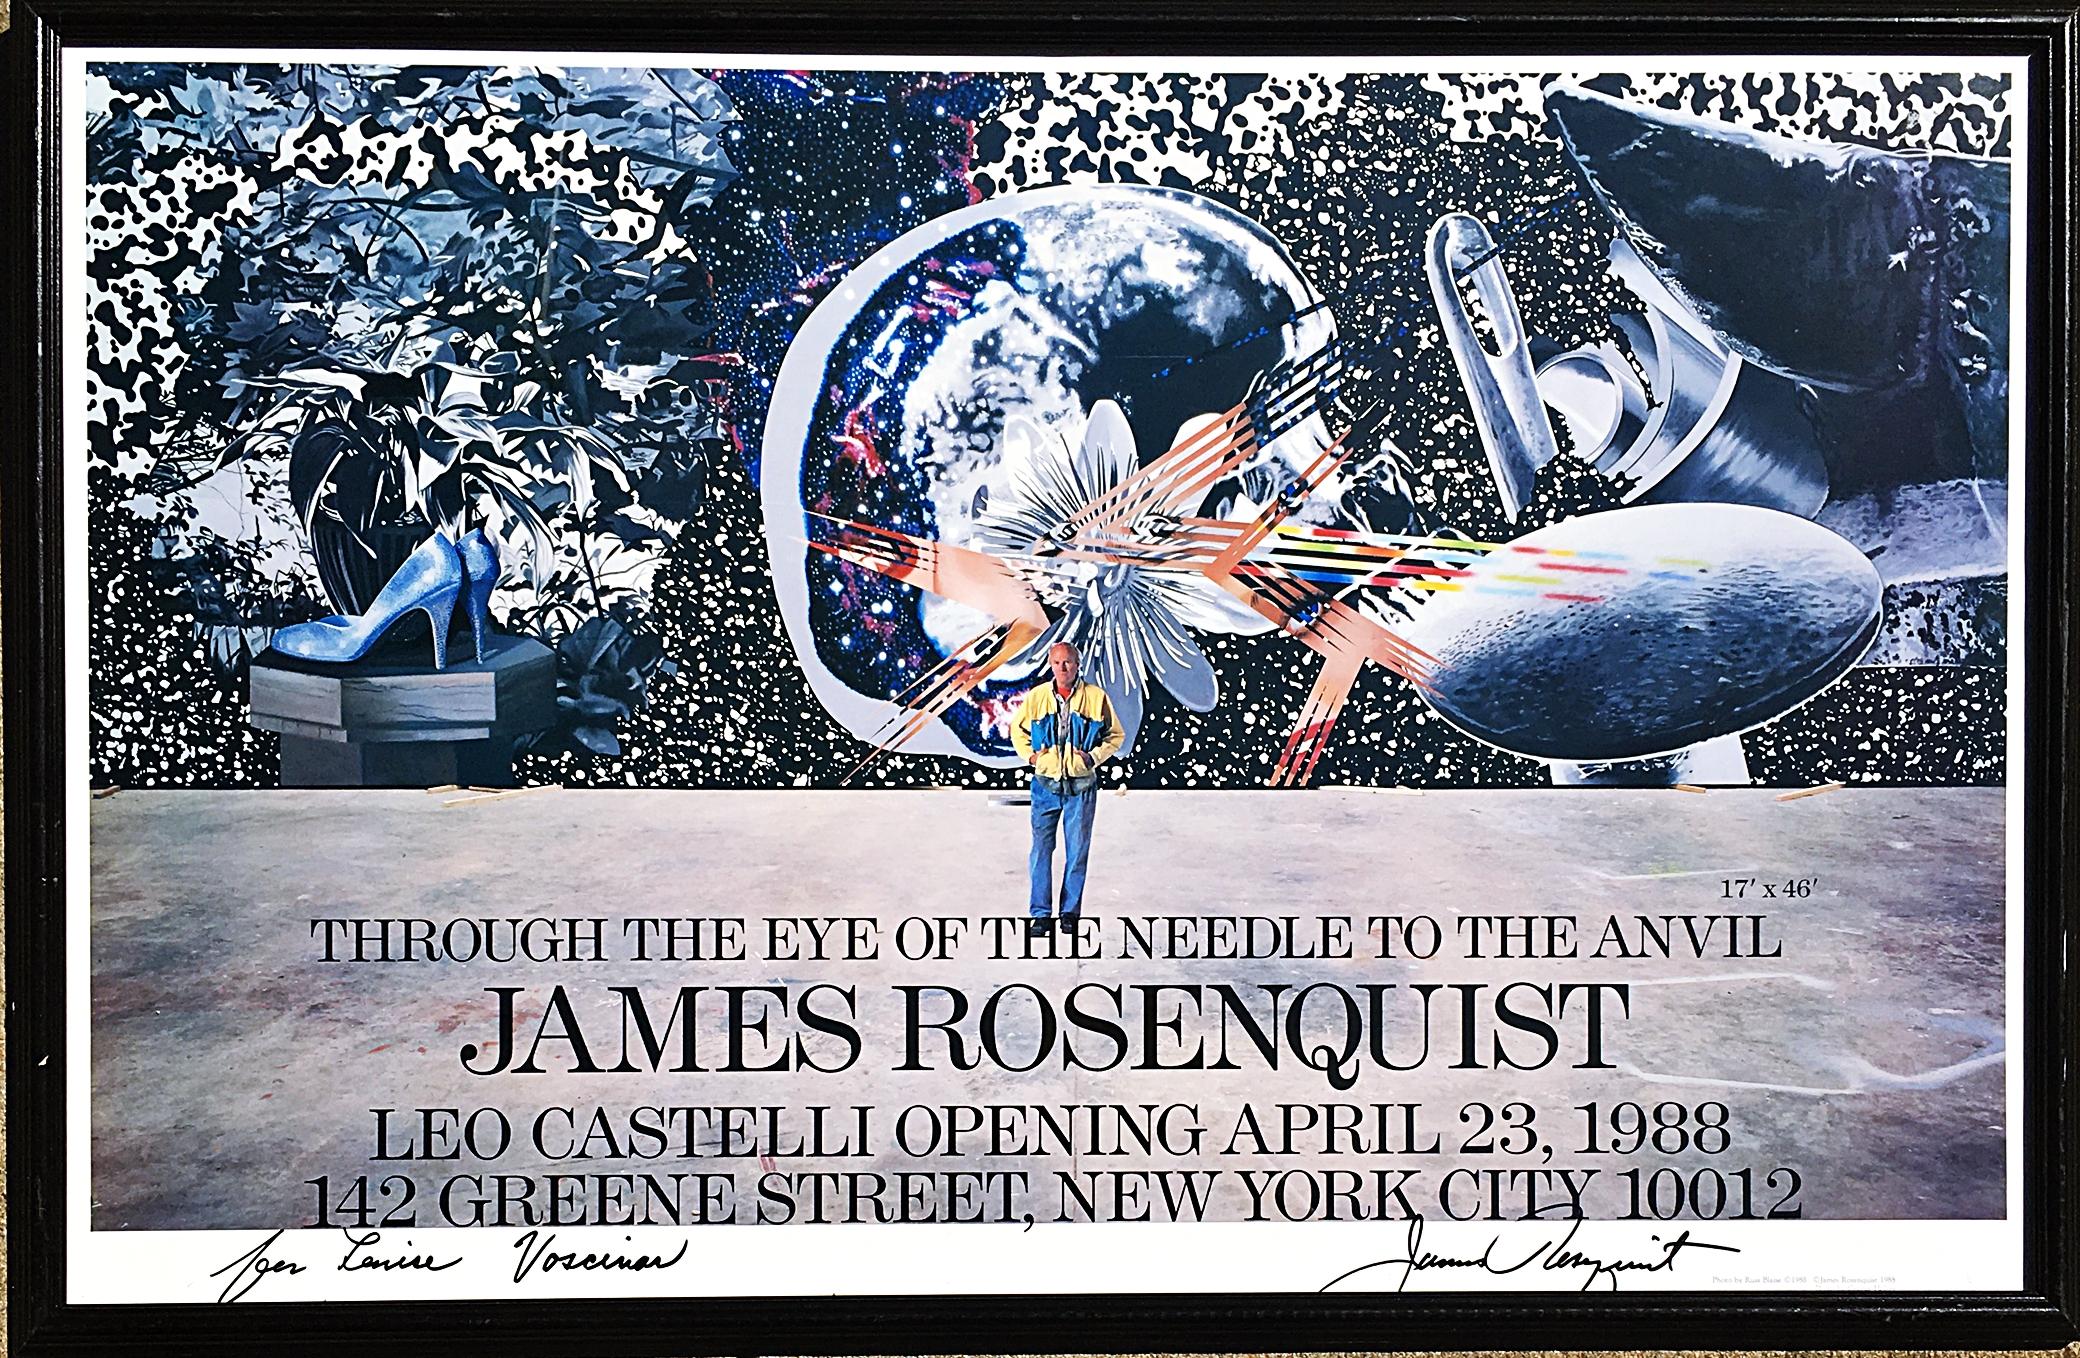 James Rosenquist
Rosenquist at Leo Castelli (signé et inscrit à la main par James Rosenquist), 1988
Affiche lithographique offset (signée à la main et Dedic)
Cadre inclus : conservé dans le cadre vintage d'origine sous plexiglas
Un objet de